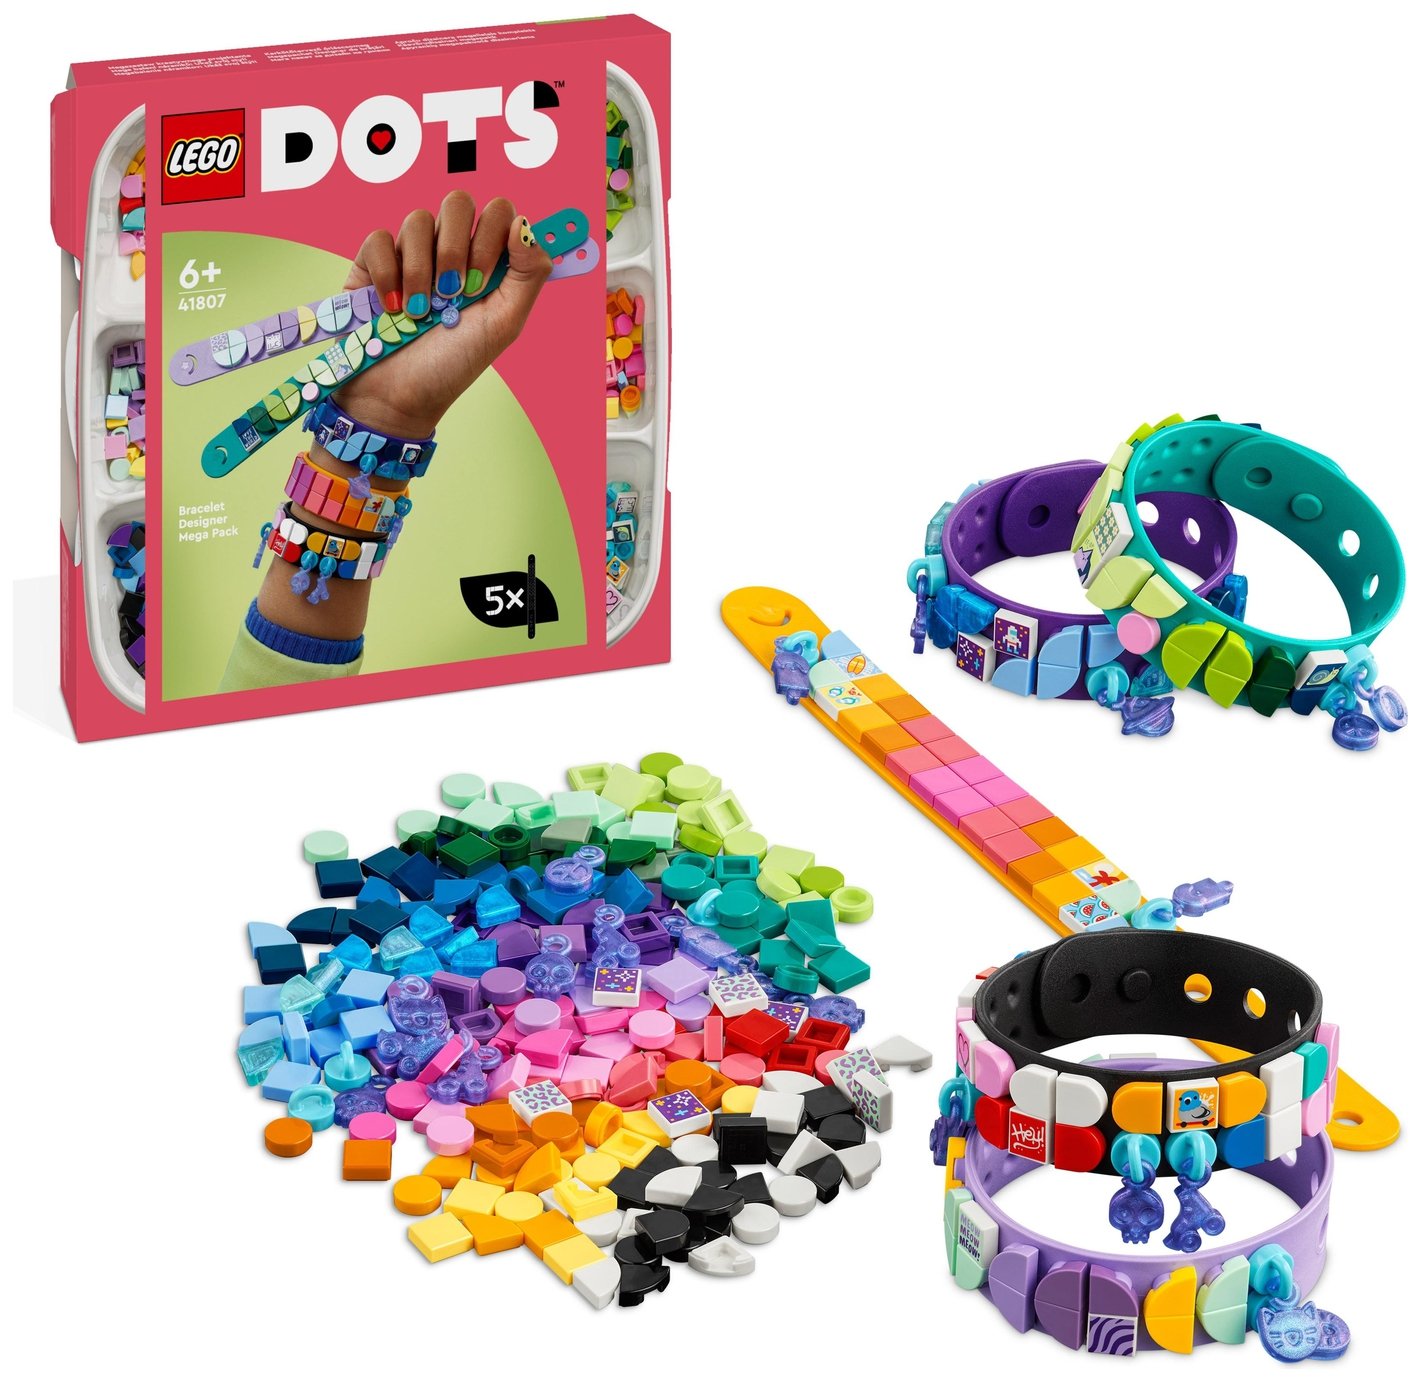 LEGO DOTS Bracelet Designer Mega Pack 5in1 Crafts Toy 41807